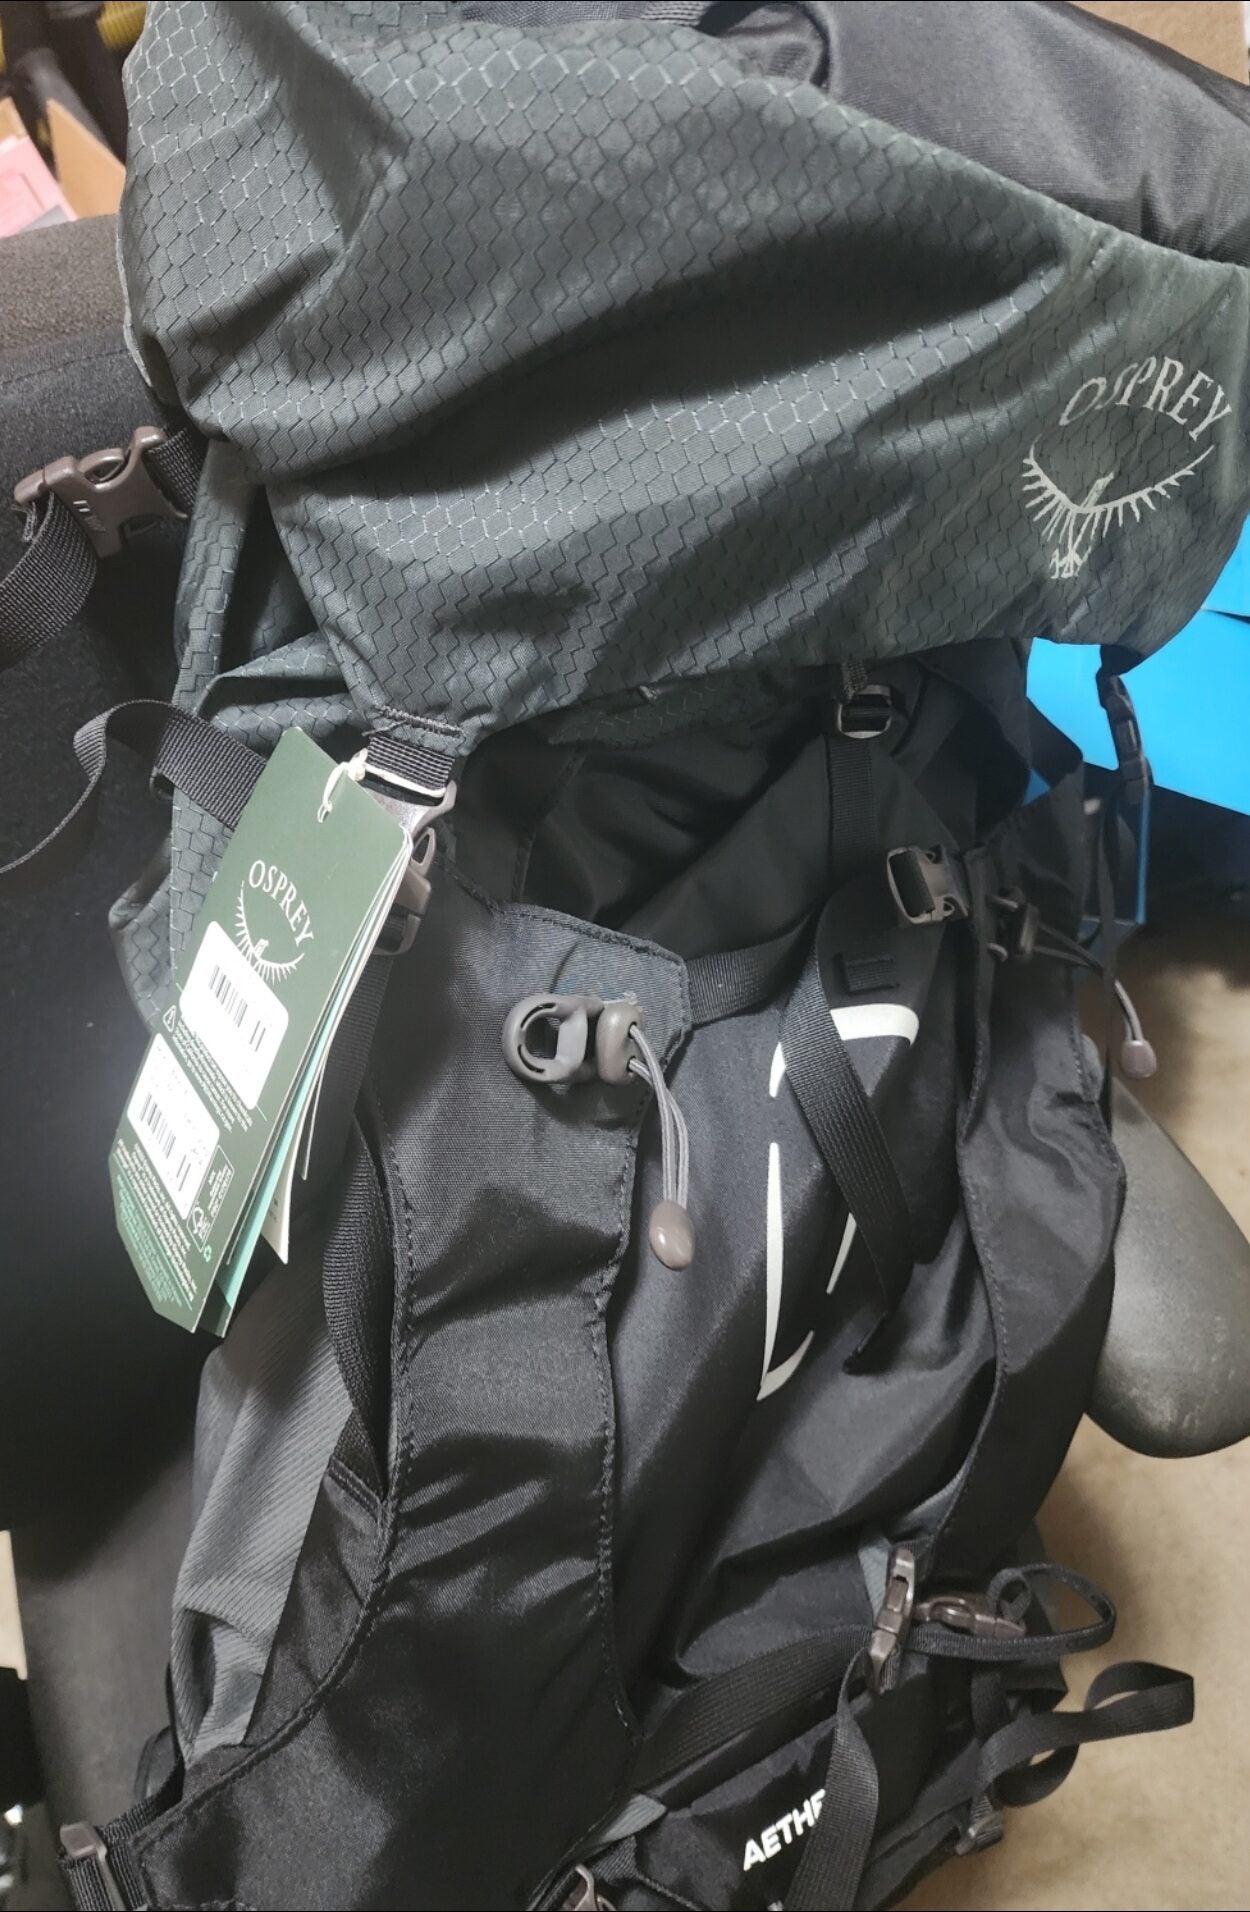 [Osprey] Osprey Aether 65L Backpacking Backpack - 259.99 [38% off] ATL ...